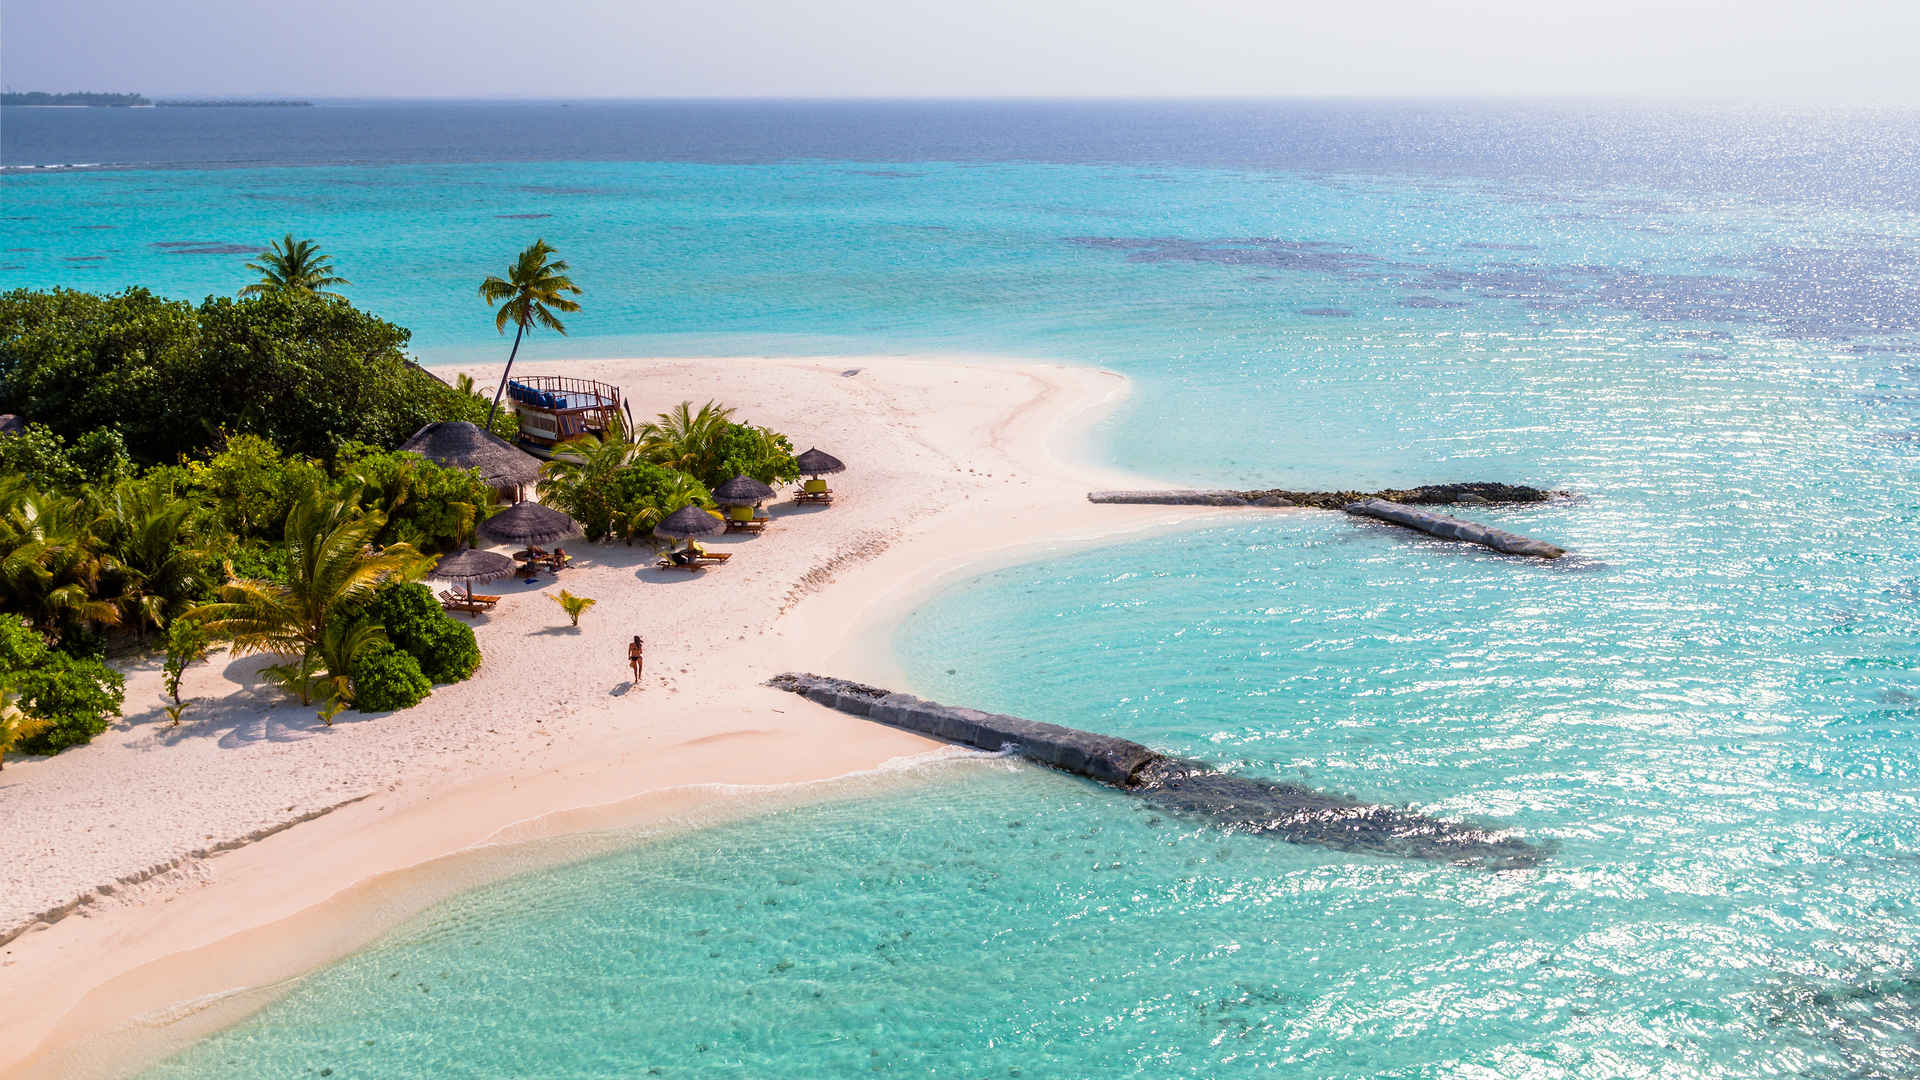 Vista aerea ripresa da un drone di un isola tropicale, Maldive